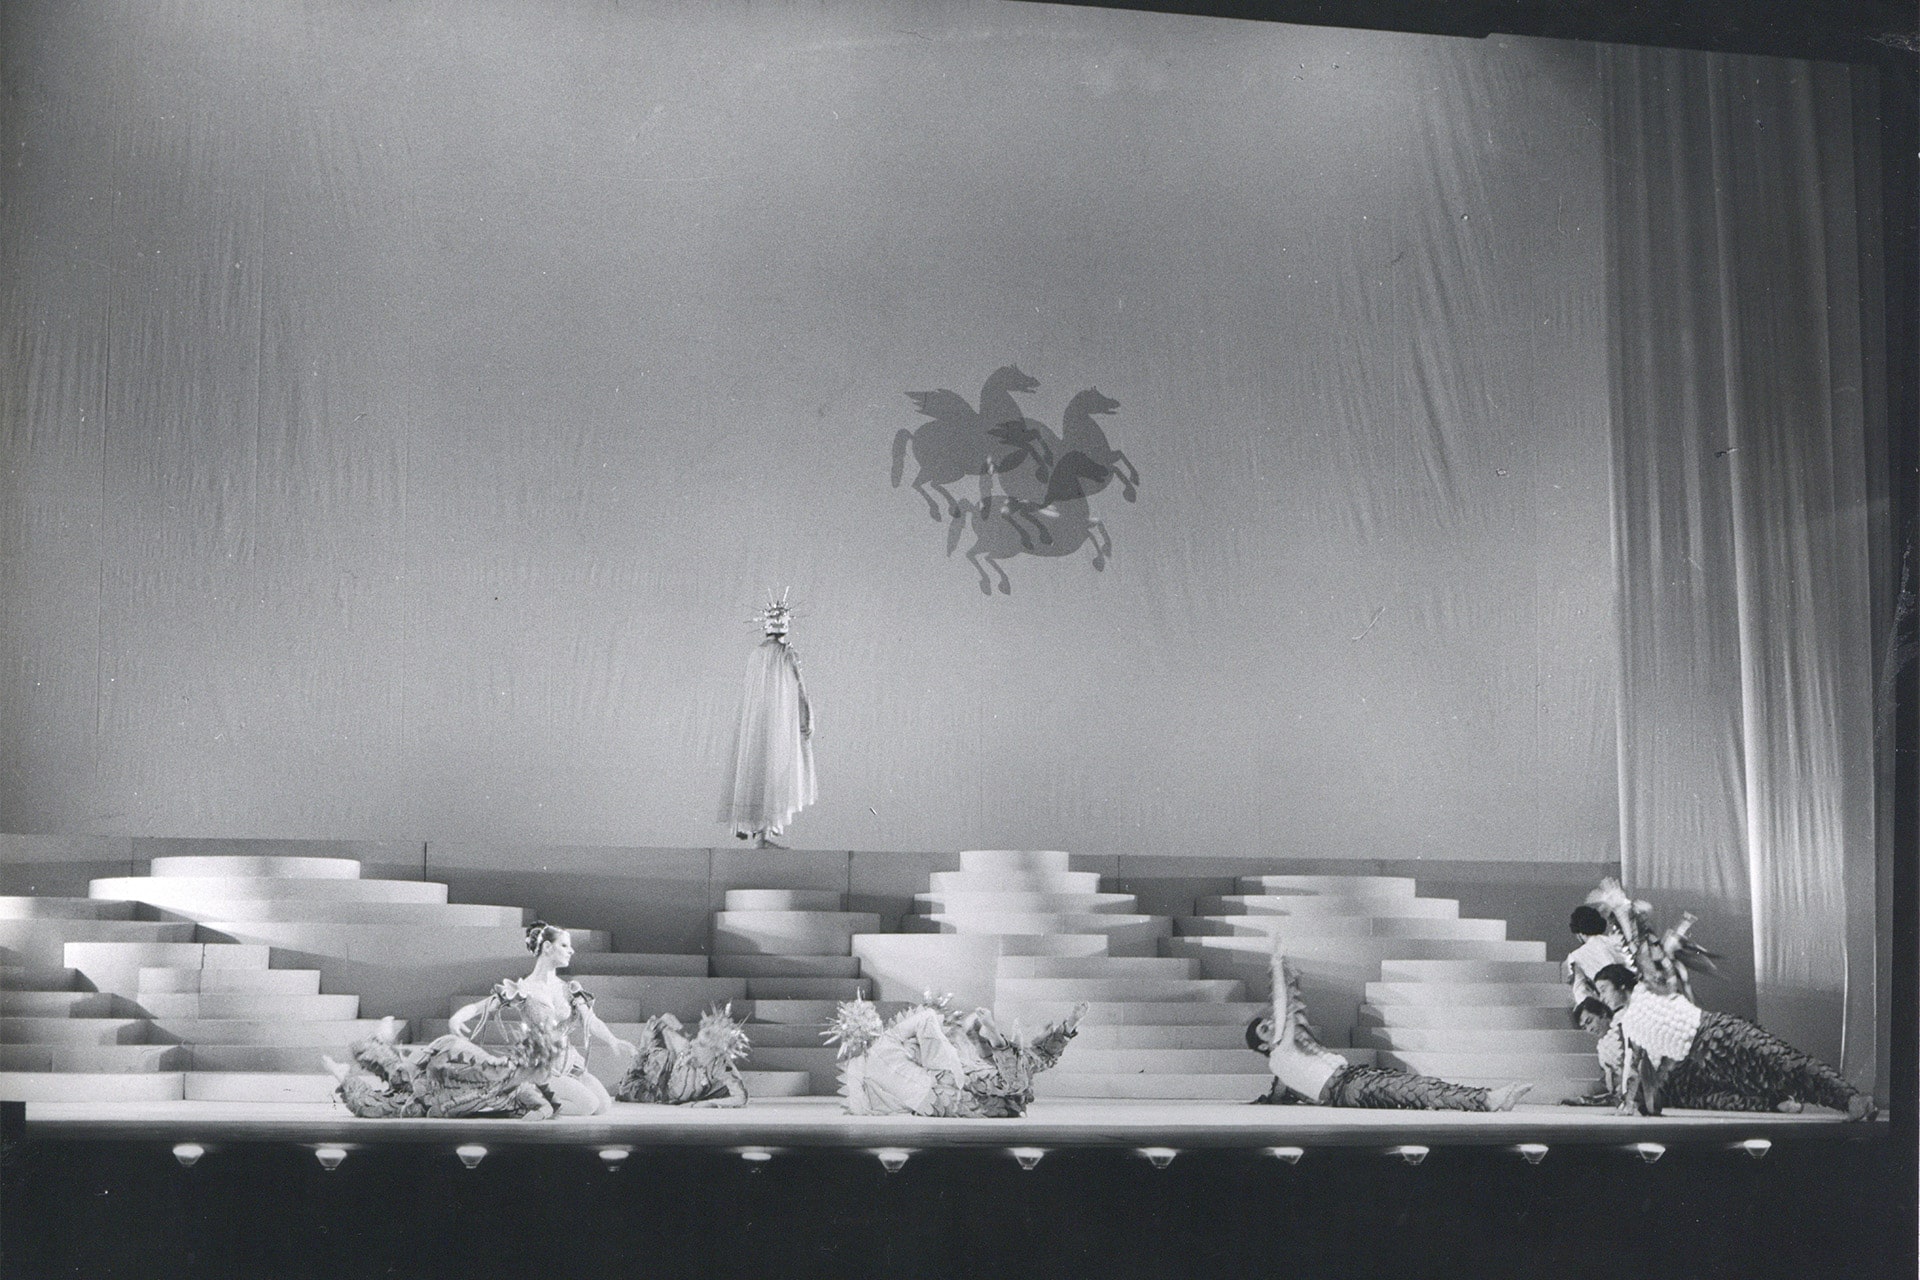 Διδώ και Αινείας του Χένρυ Πέρσελ, σε μουσική διεύθυνση Μάνου Χατζιδάκι, σκηνοθεσία Γιώργου Χριστοδουλάκη, σκηνικά και κοστούμια Αντώνη Κυριακούλη, Θέατρο Ολύμπια (1975/76), φωτογραφία Ηνωμένοι Φωτορεπόρτερ.